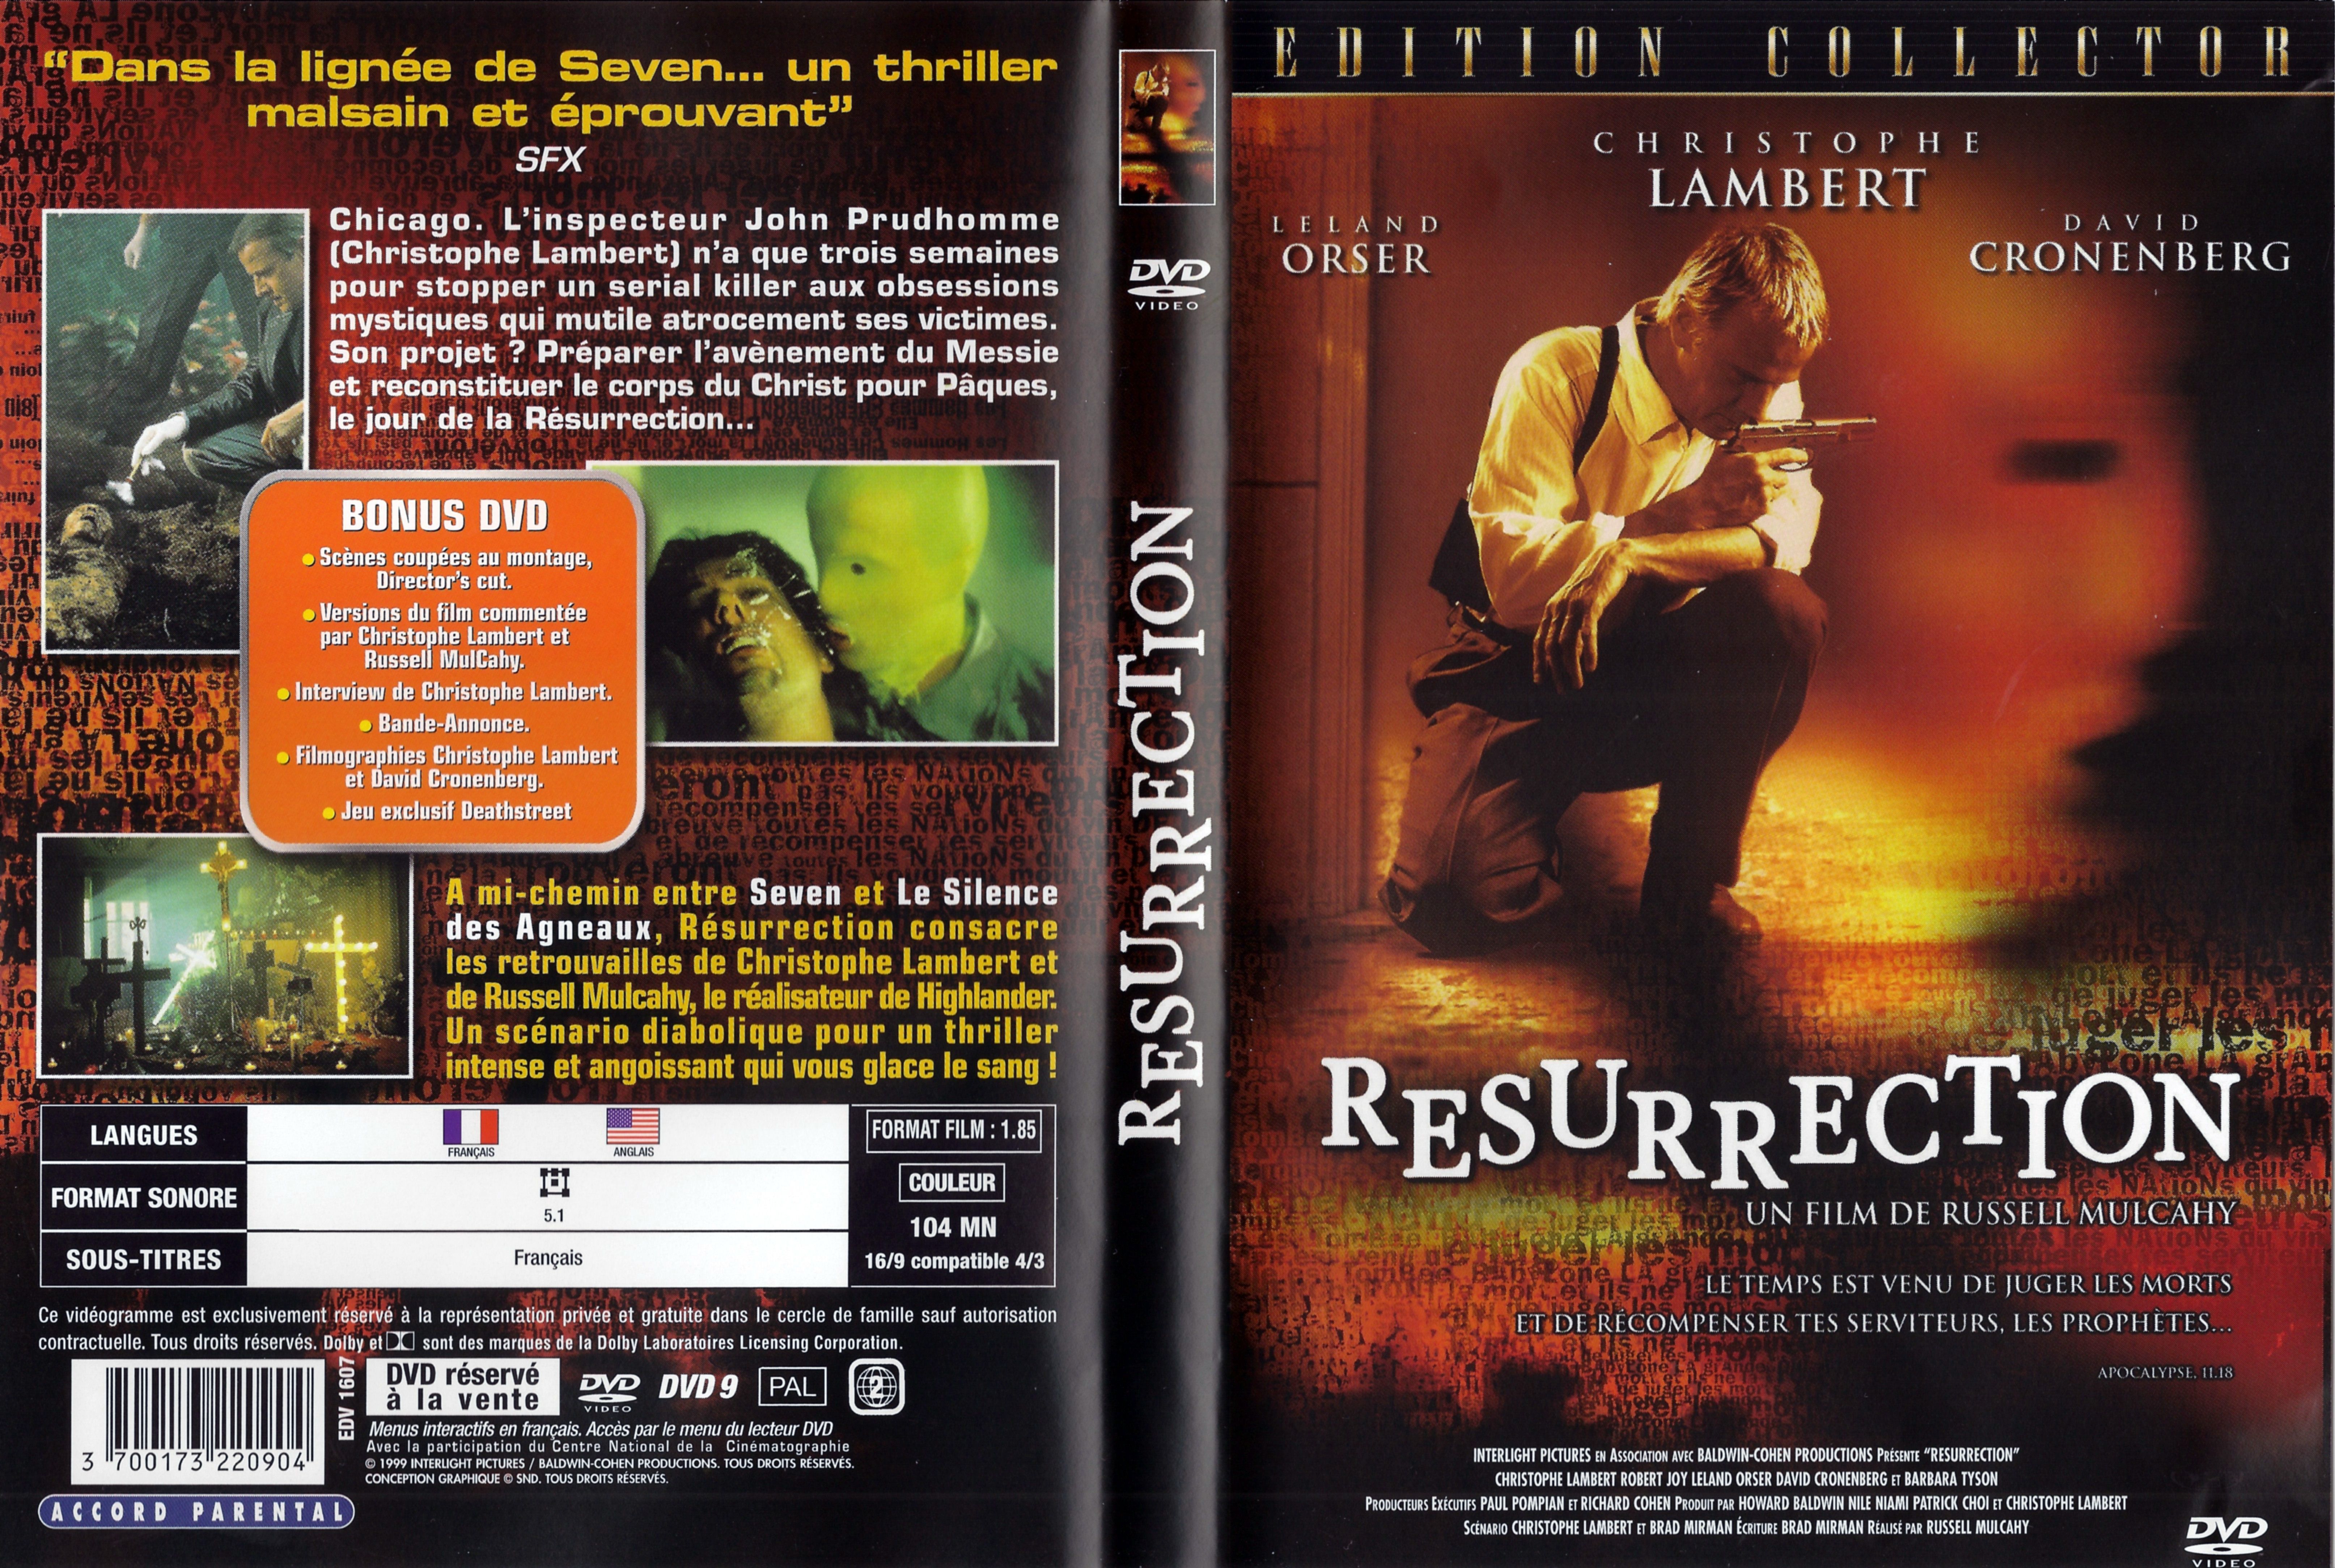 Jaquette DVD Resurrection v2